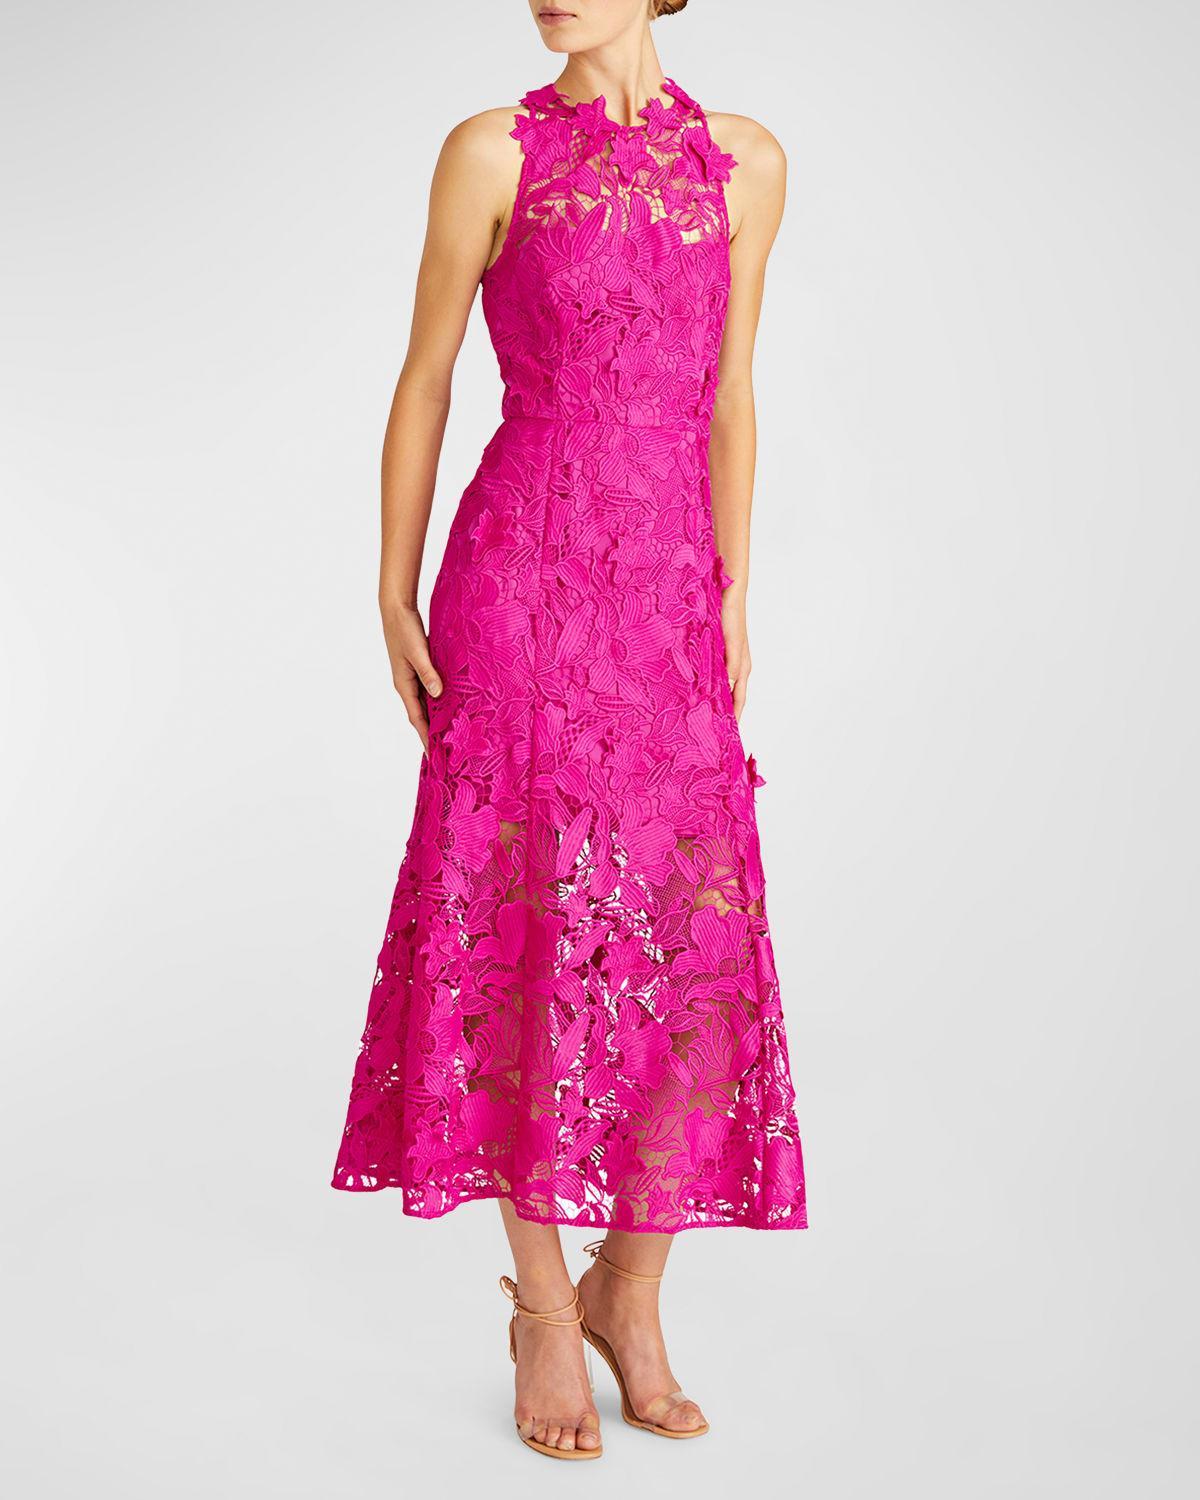 Colette Floral Lace Halter Midi Dress Product Image